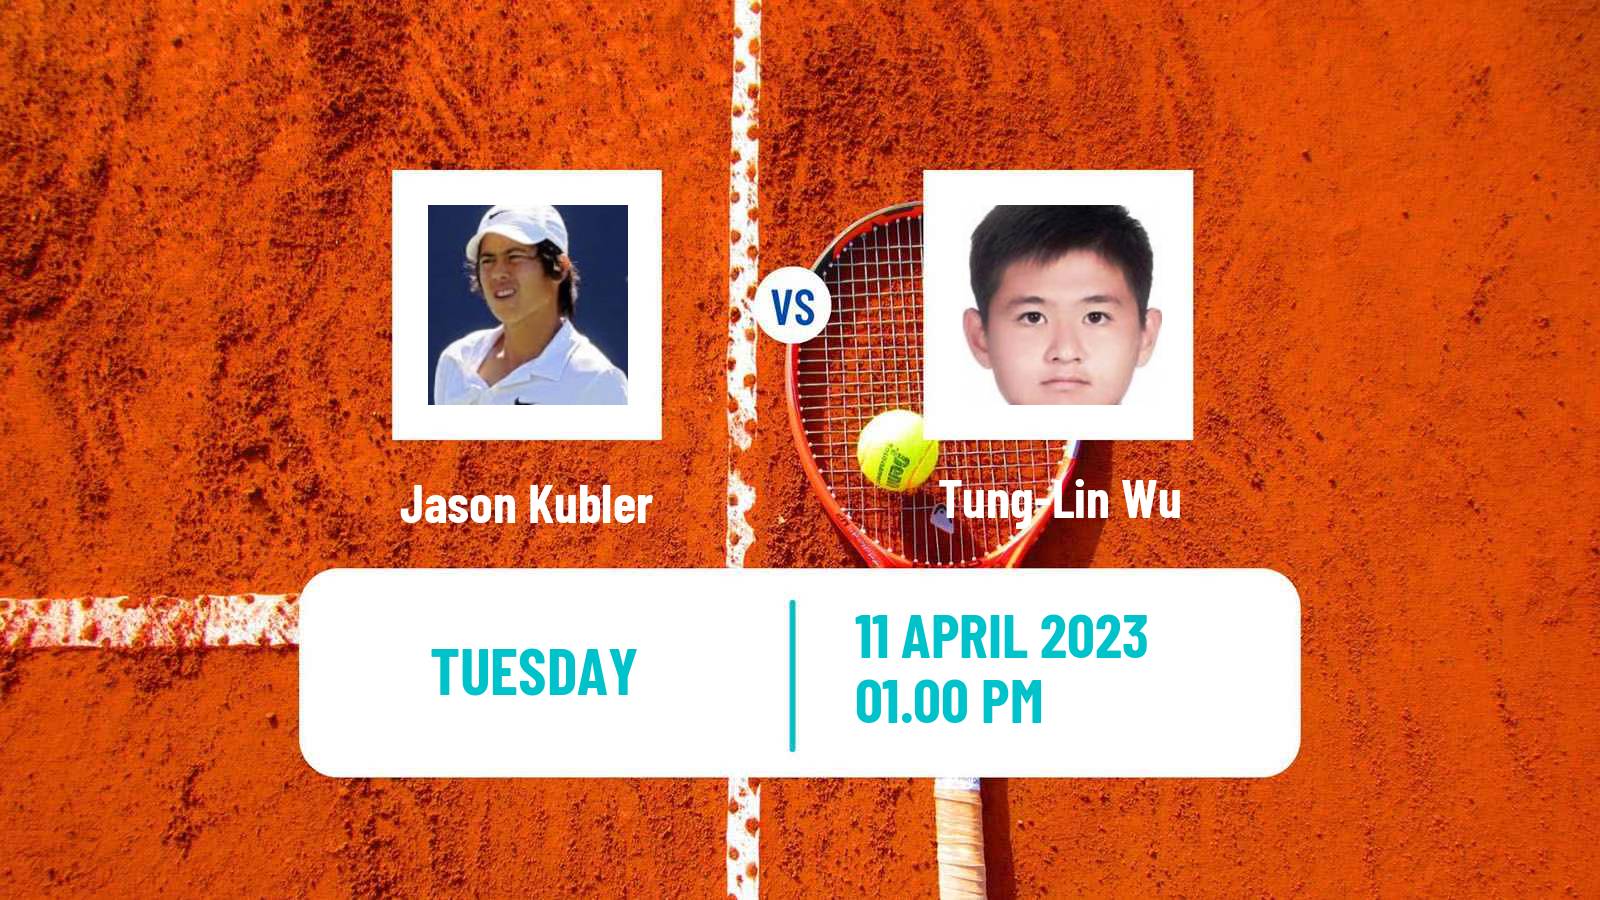 Tennis ATP Challenger Jason Kubler - Tung-Lin Wu